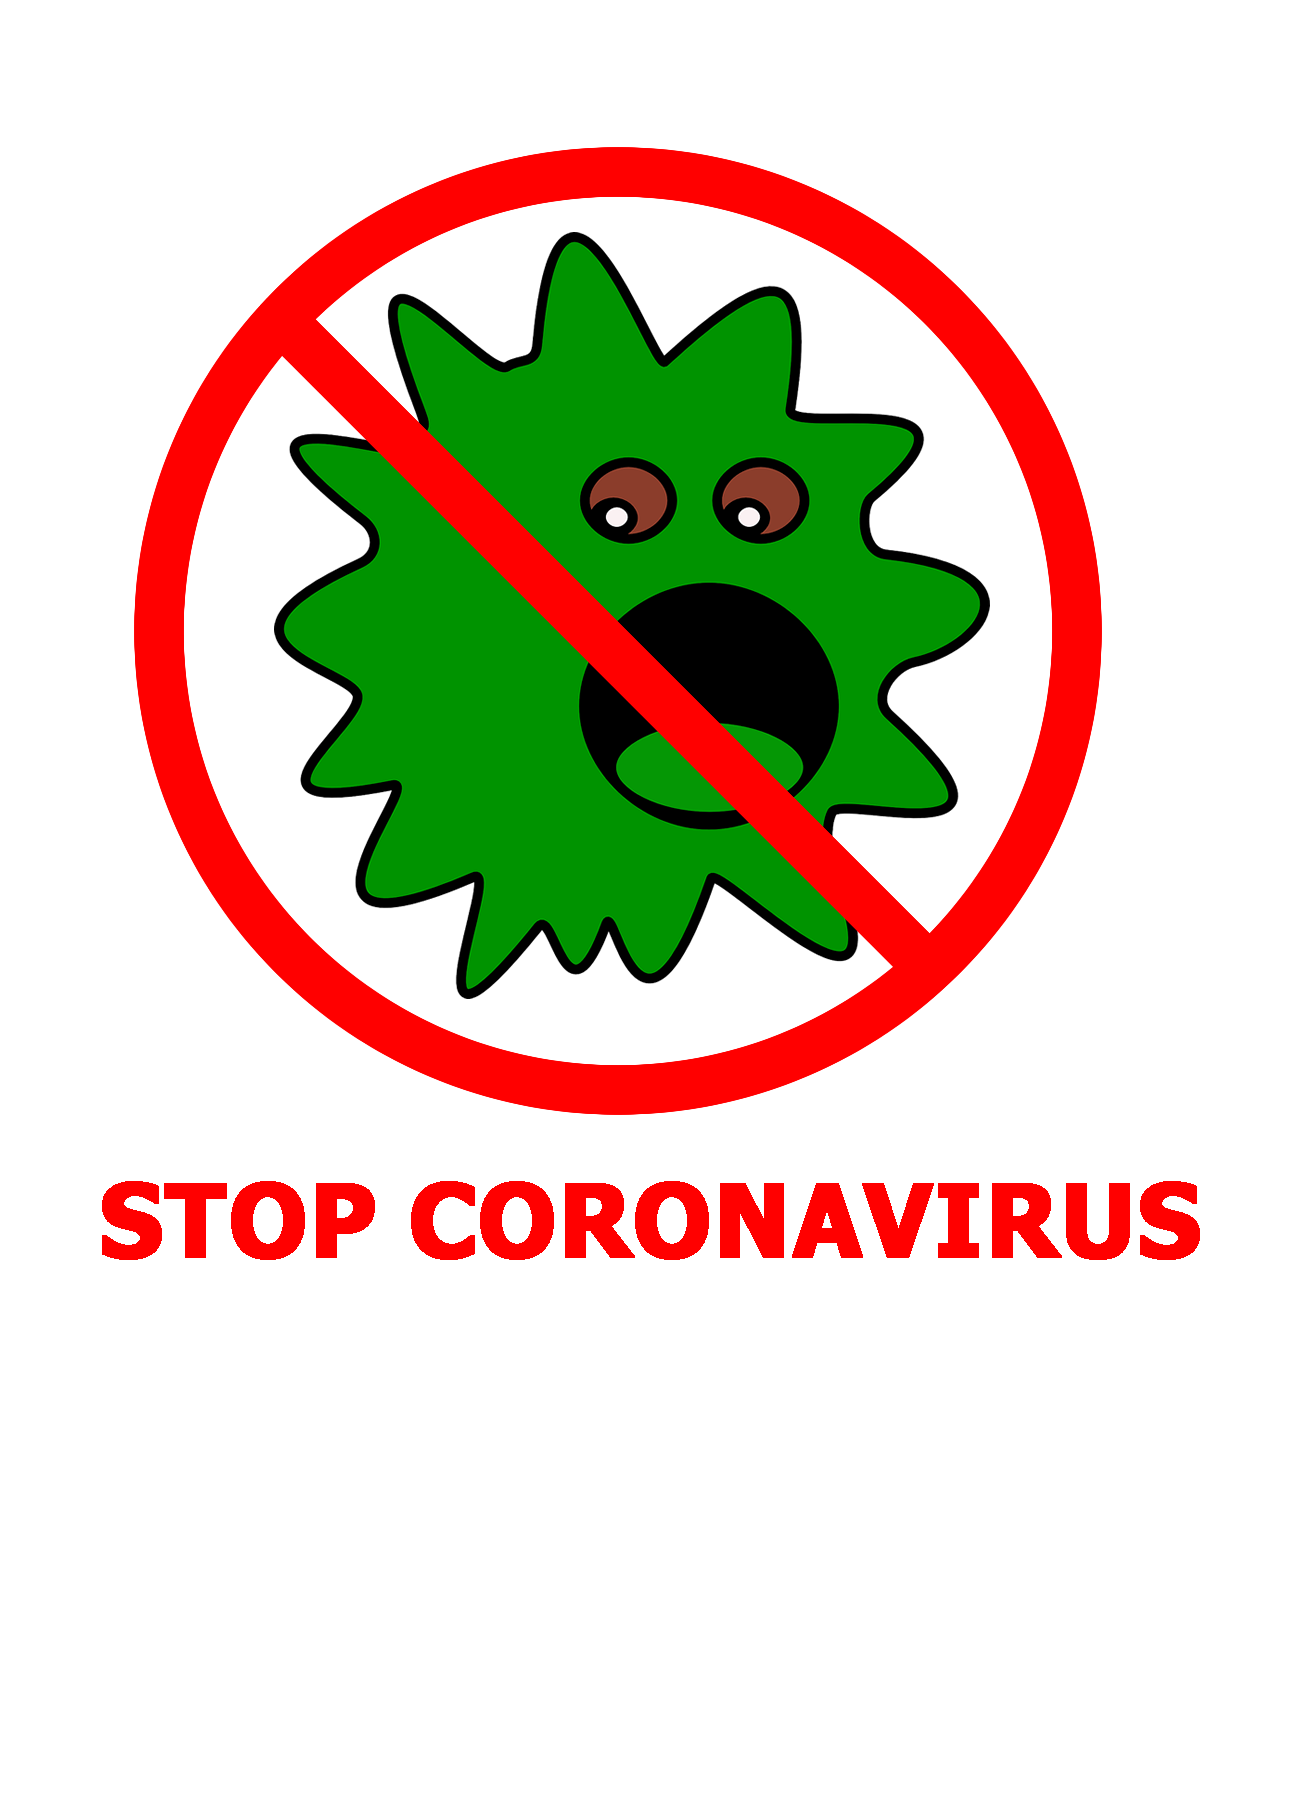 หยุดไวรัสคราวน์ตัวใหม่!